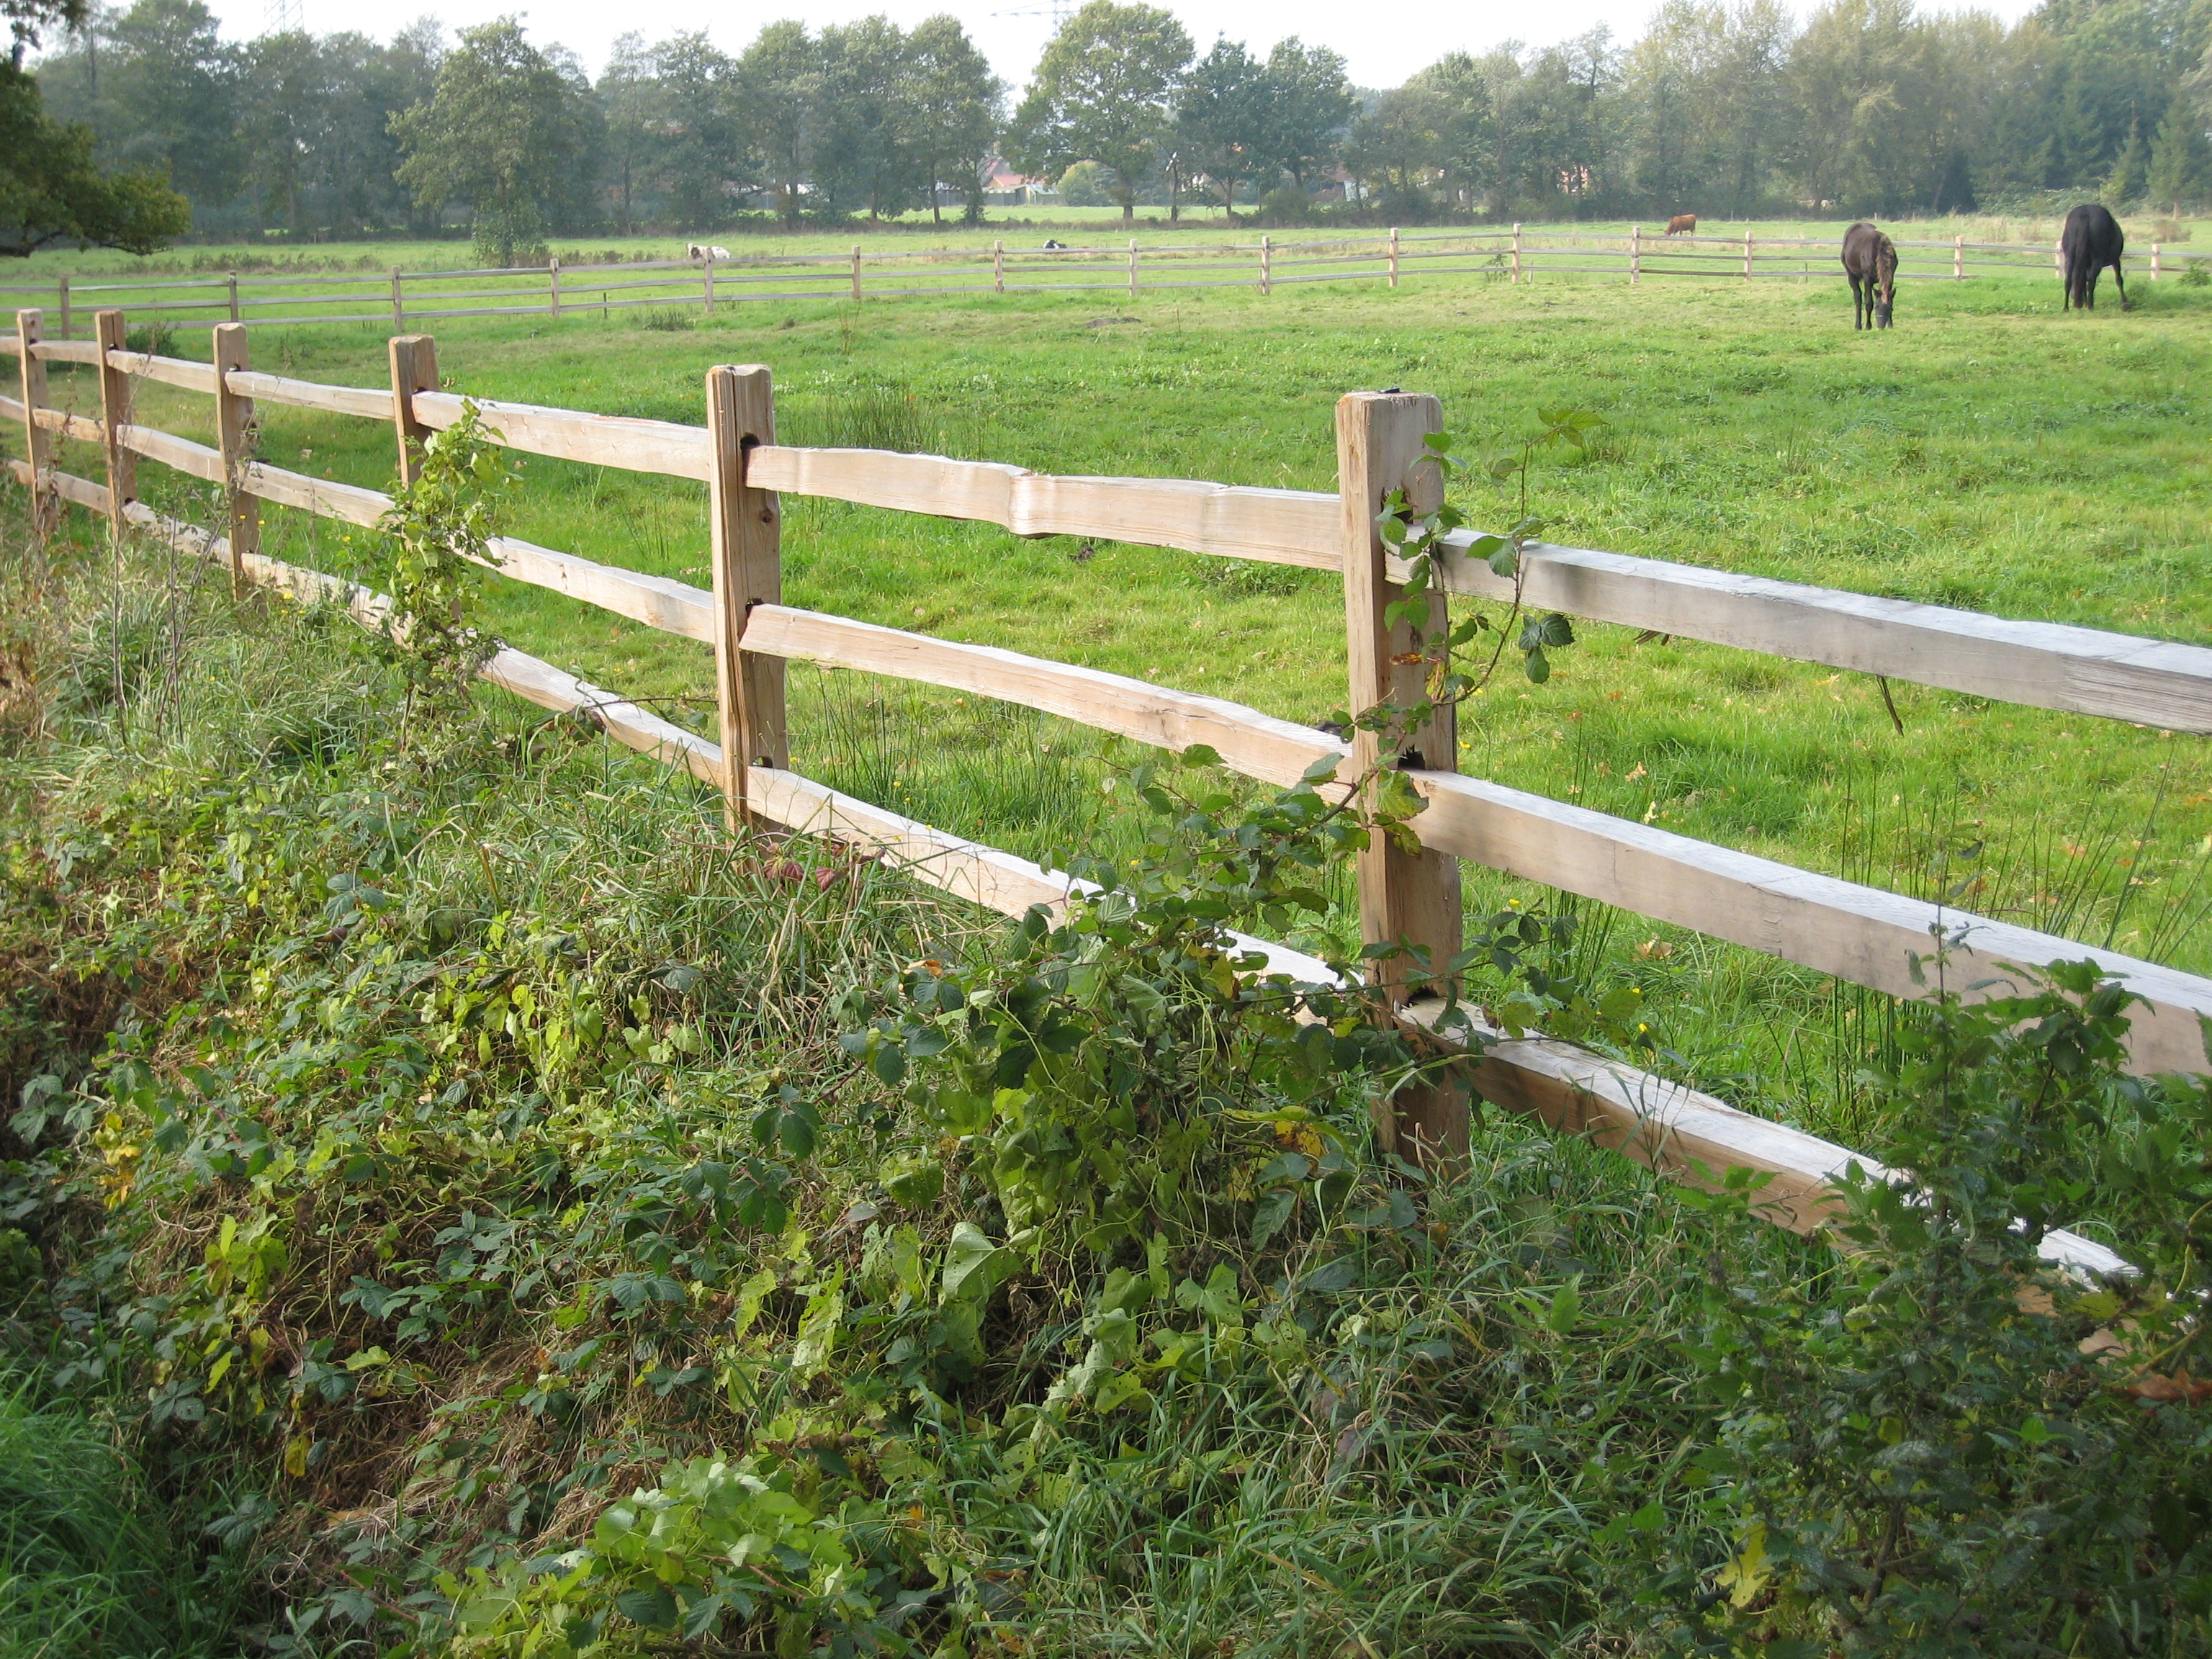 Ein rustikaler Pferdezaun aus Zedernholz begrenzt eine Wiese, auf der zwei Pferde grasen.